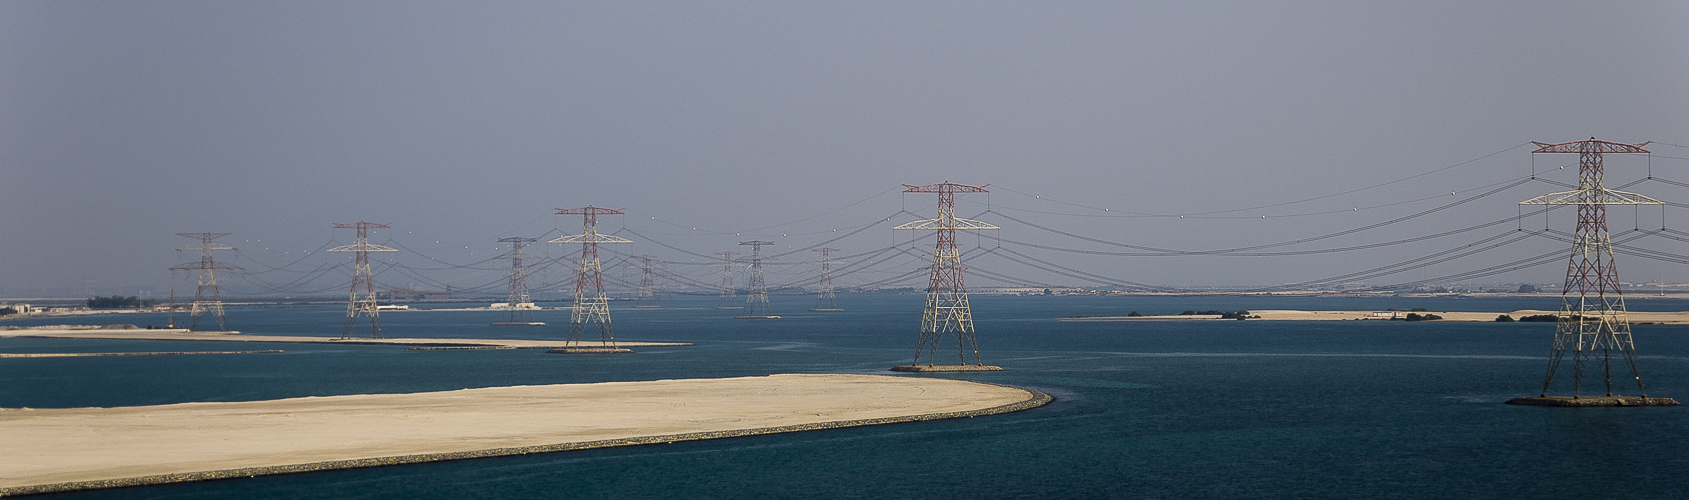 Dubai energy